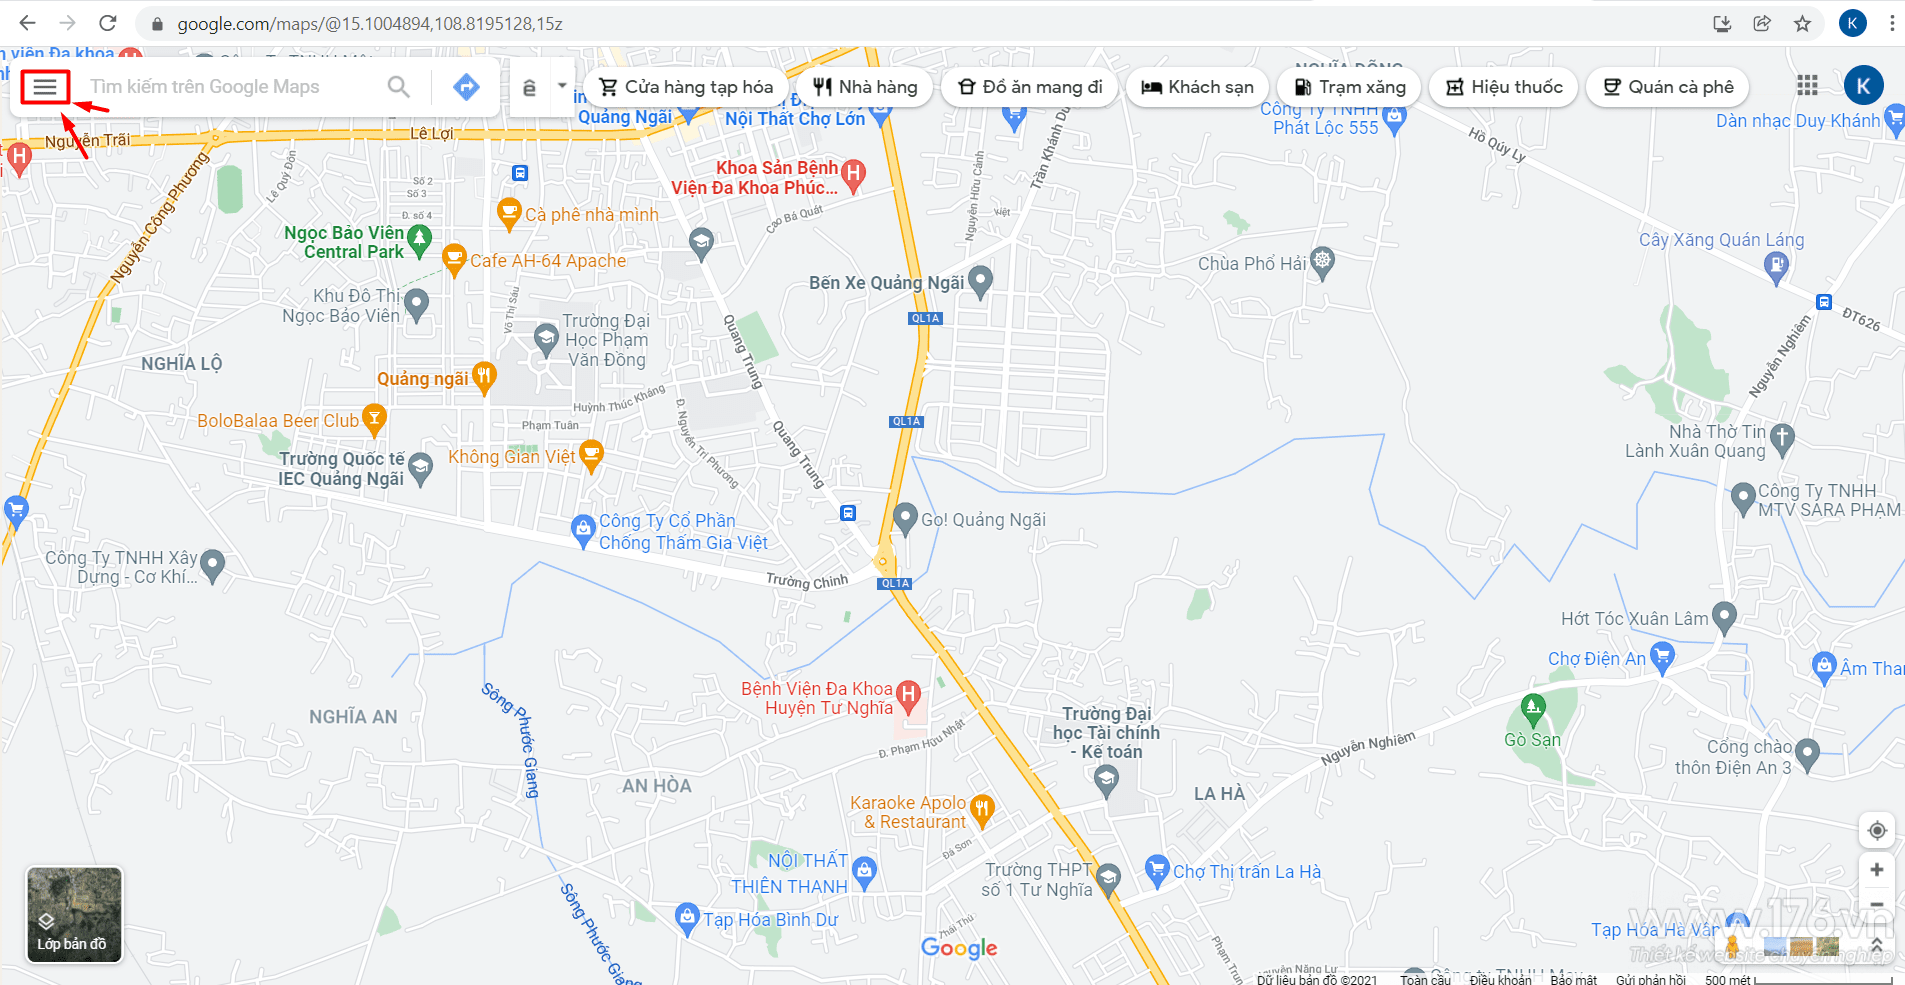 cach tao google map tai quang ngai